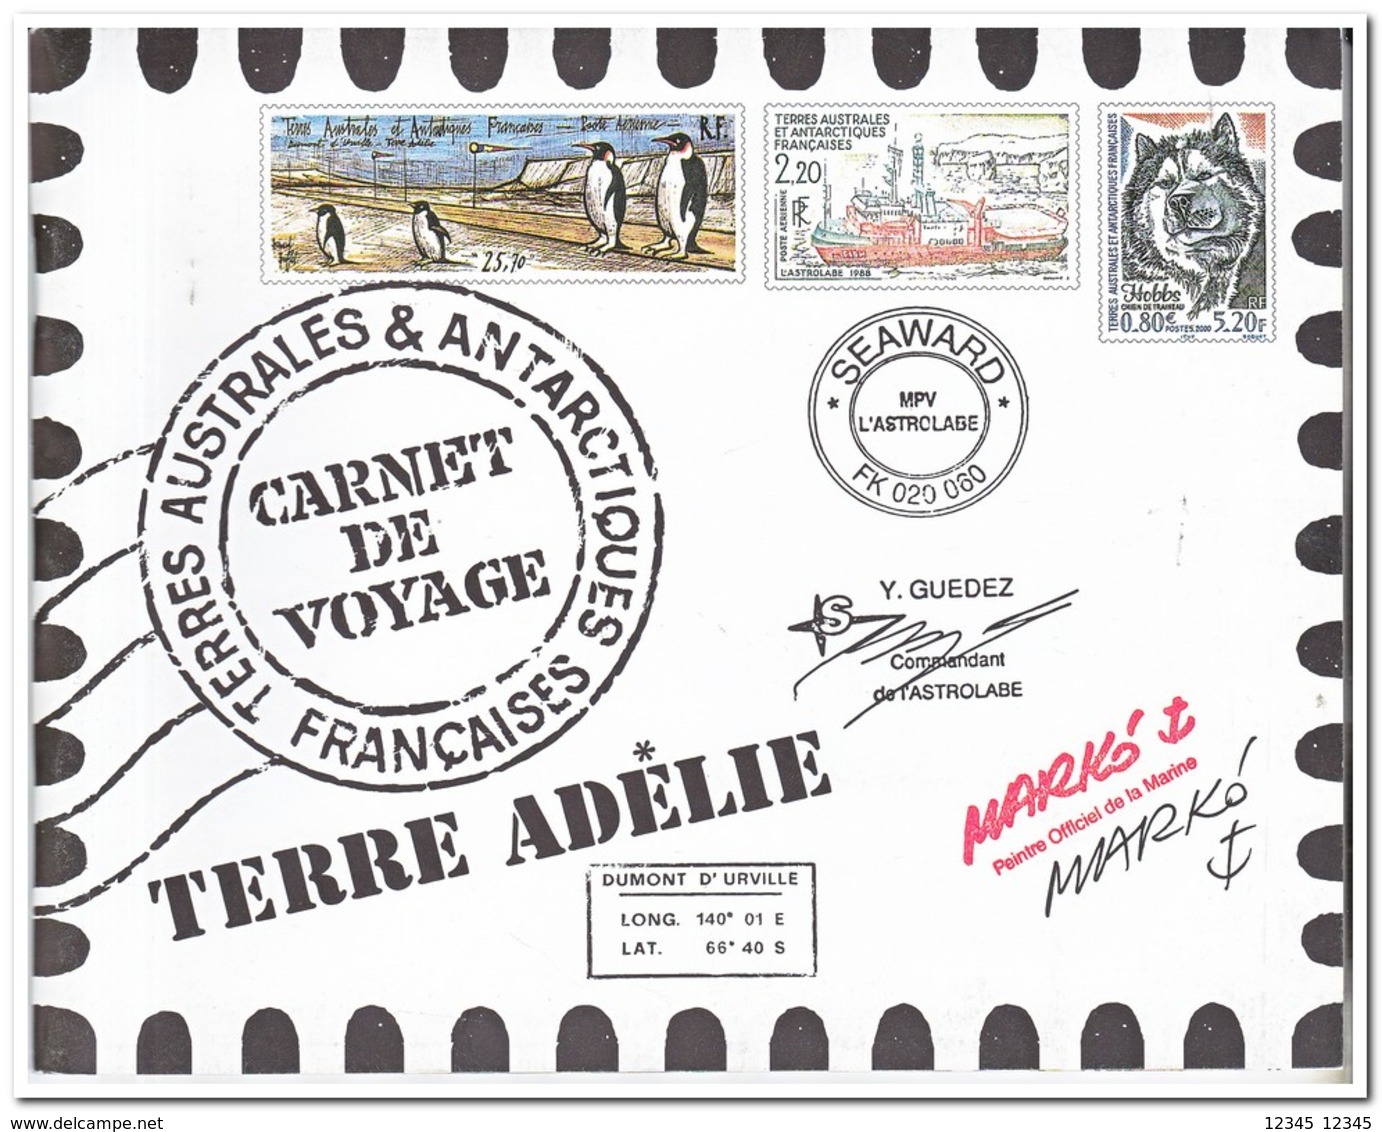 Frans Antarctica 2001, Postfris MNH, Carnet De Voyage ( Booklet, Carnet ) - Cuadernillos/libretas